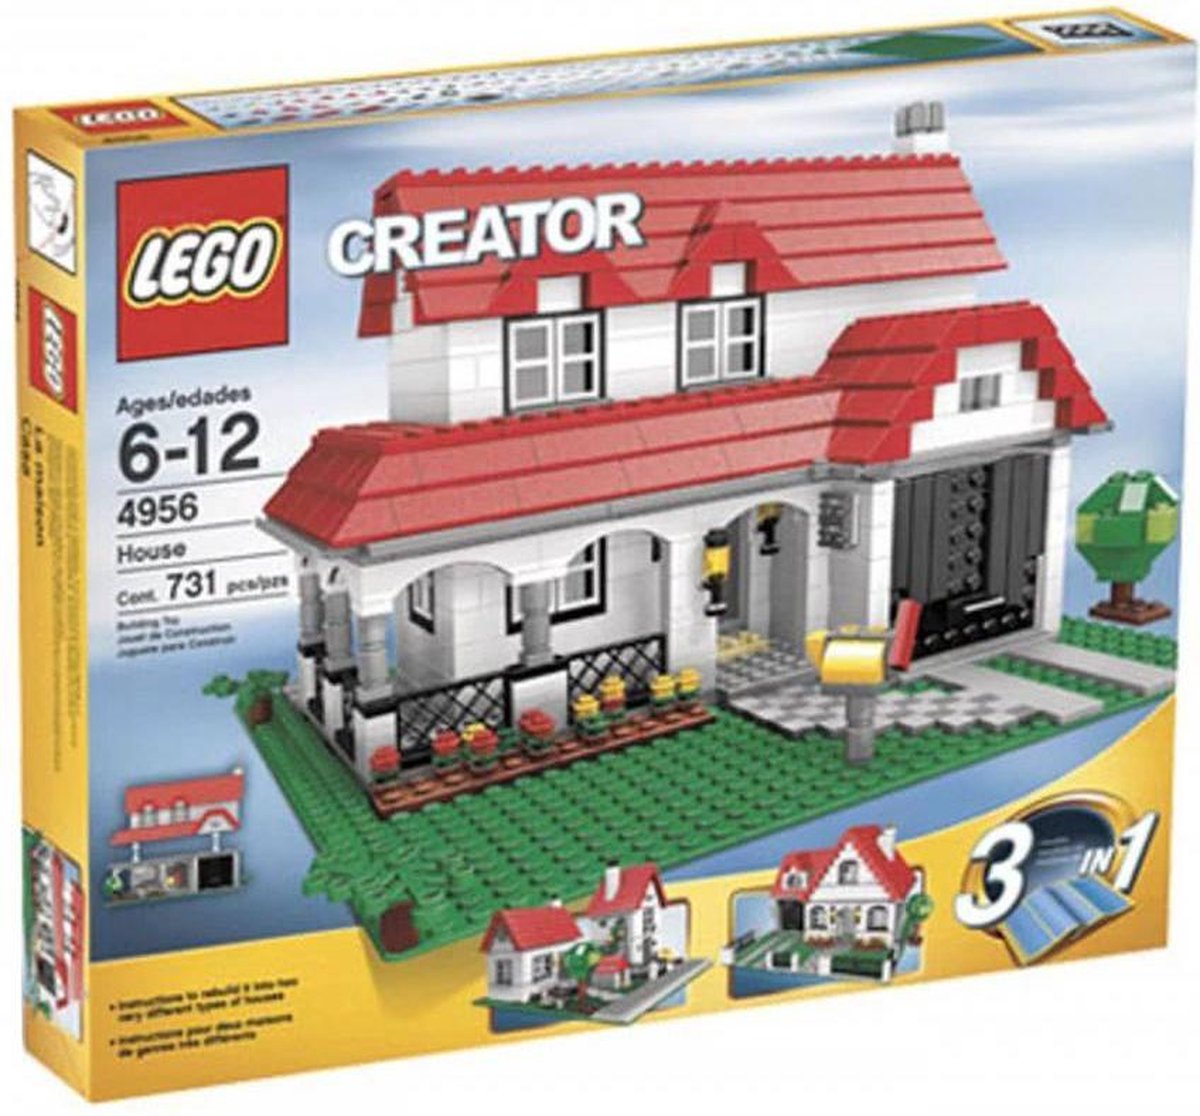 Rechtdoor kant koppeling LEGO Creator Huis - 4956 | bol.com